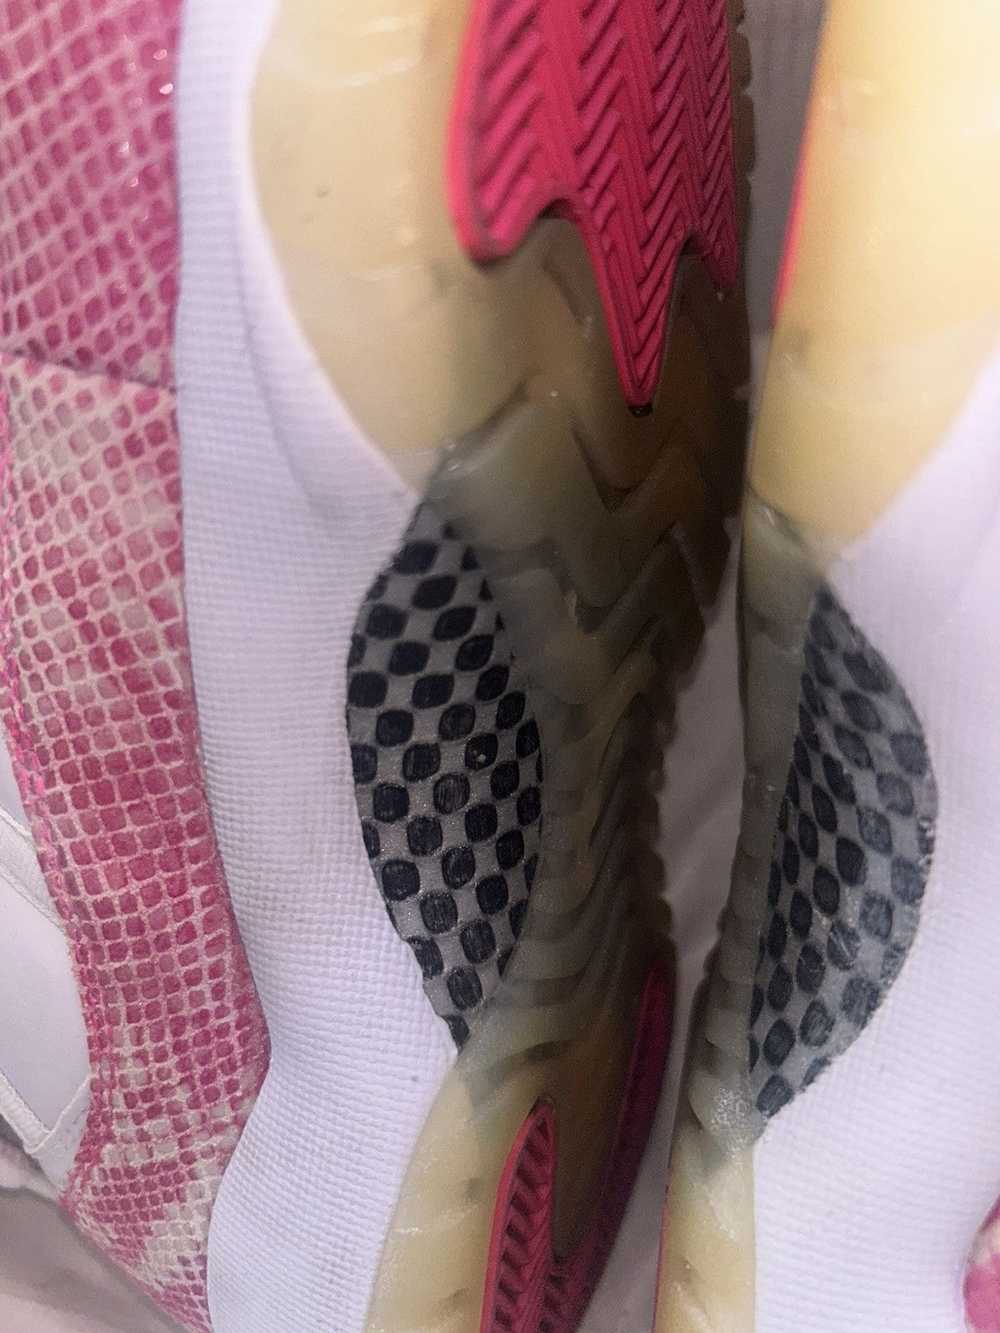 Jordan Brand Pink Snake Skin 11s - image 8